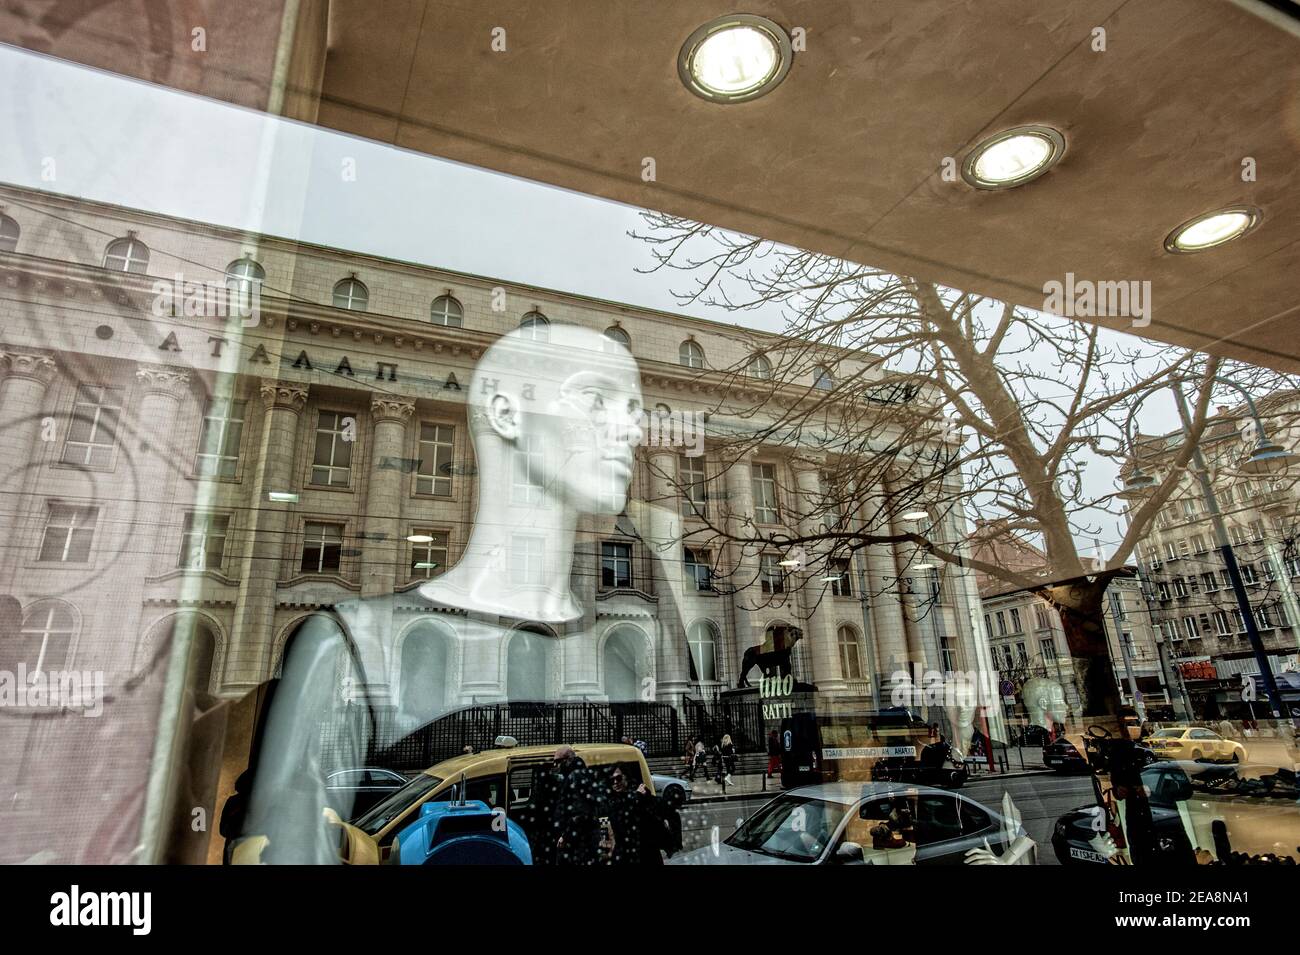 Vitrine de magasin de mode avec réflexion de scène de rue, Sofia, Bulgarie Banque D'Images